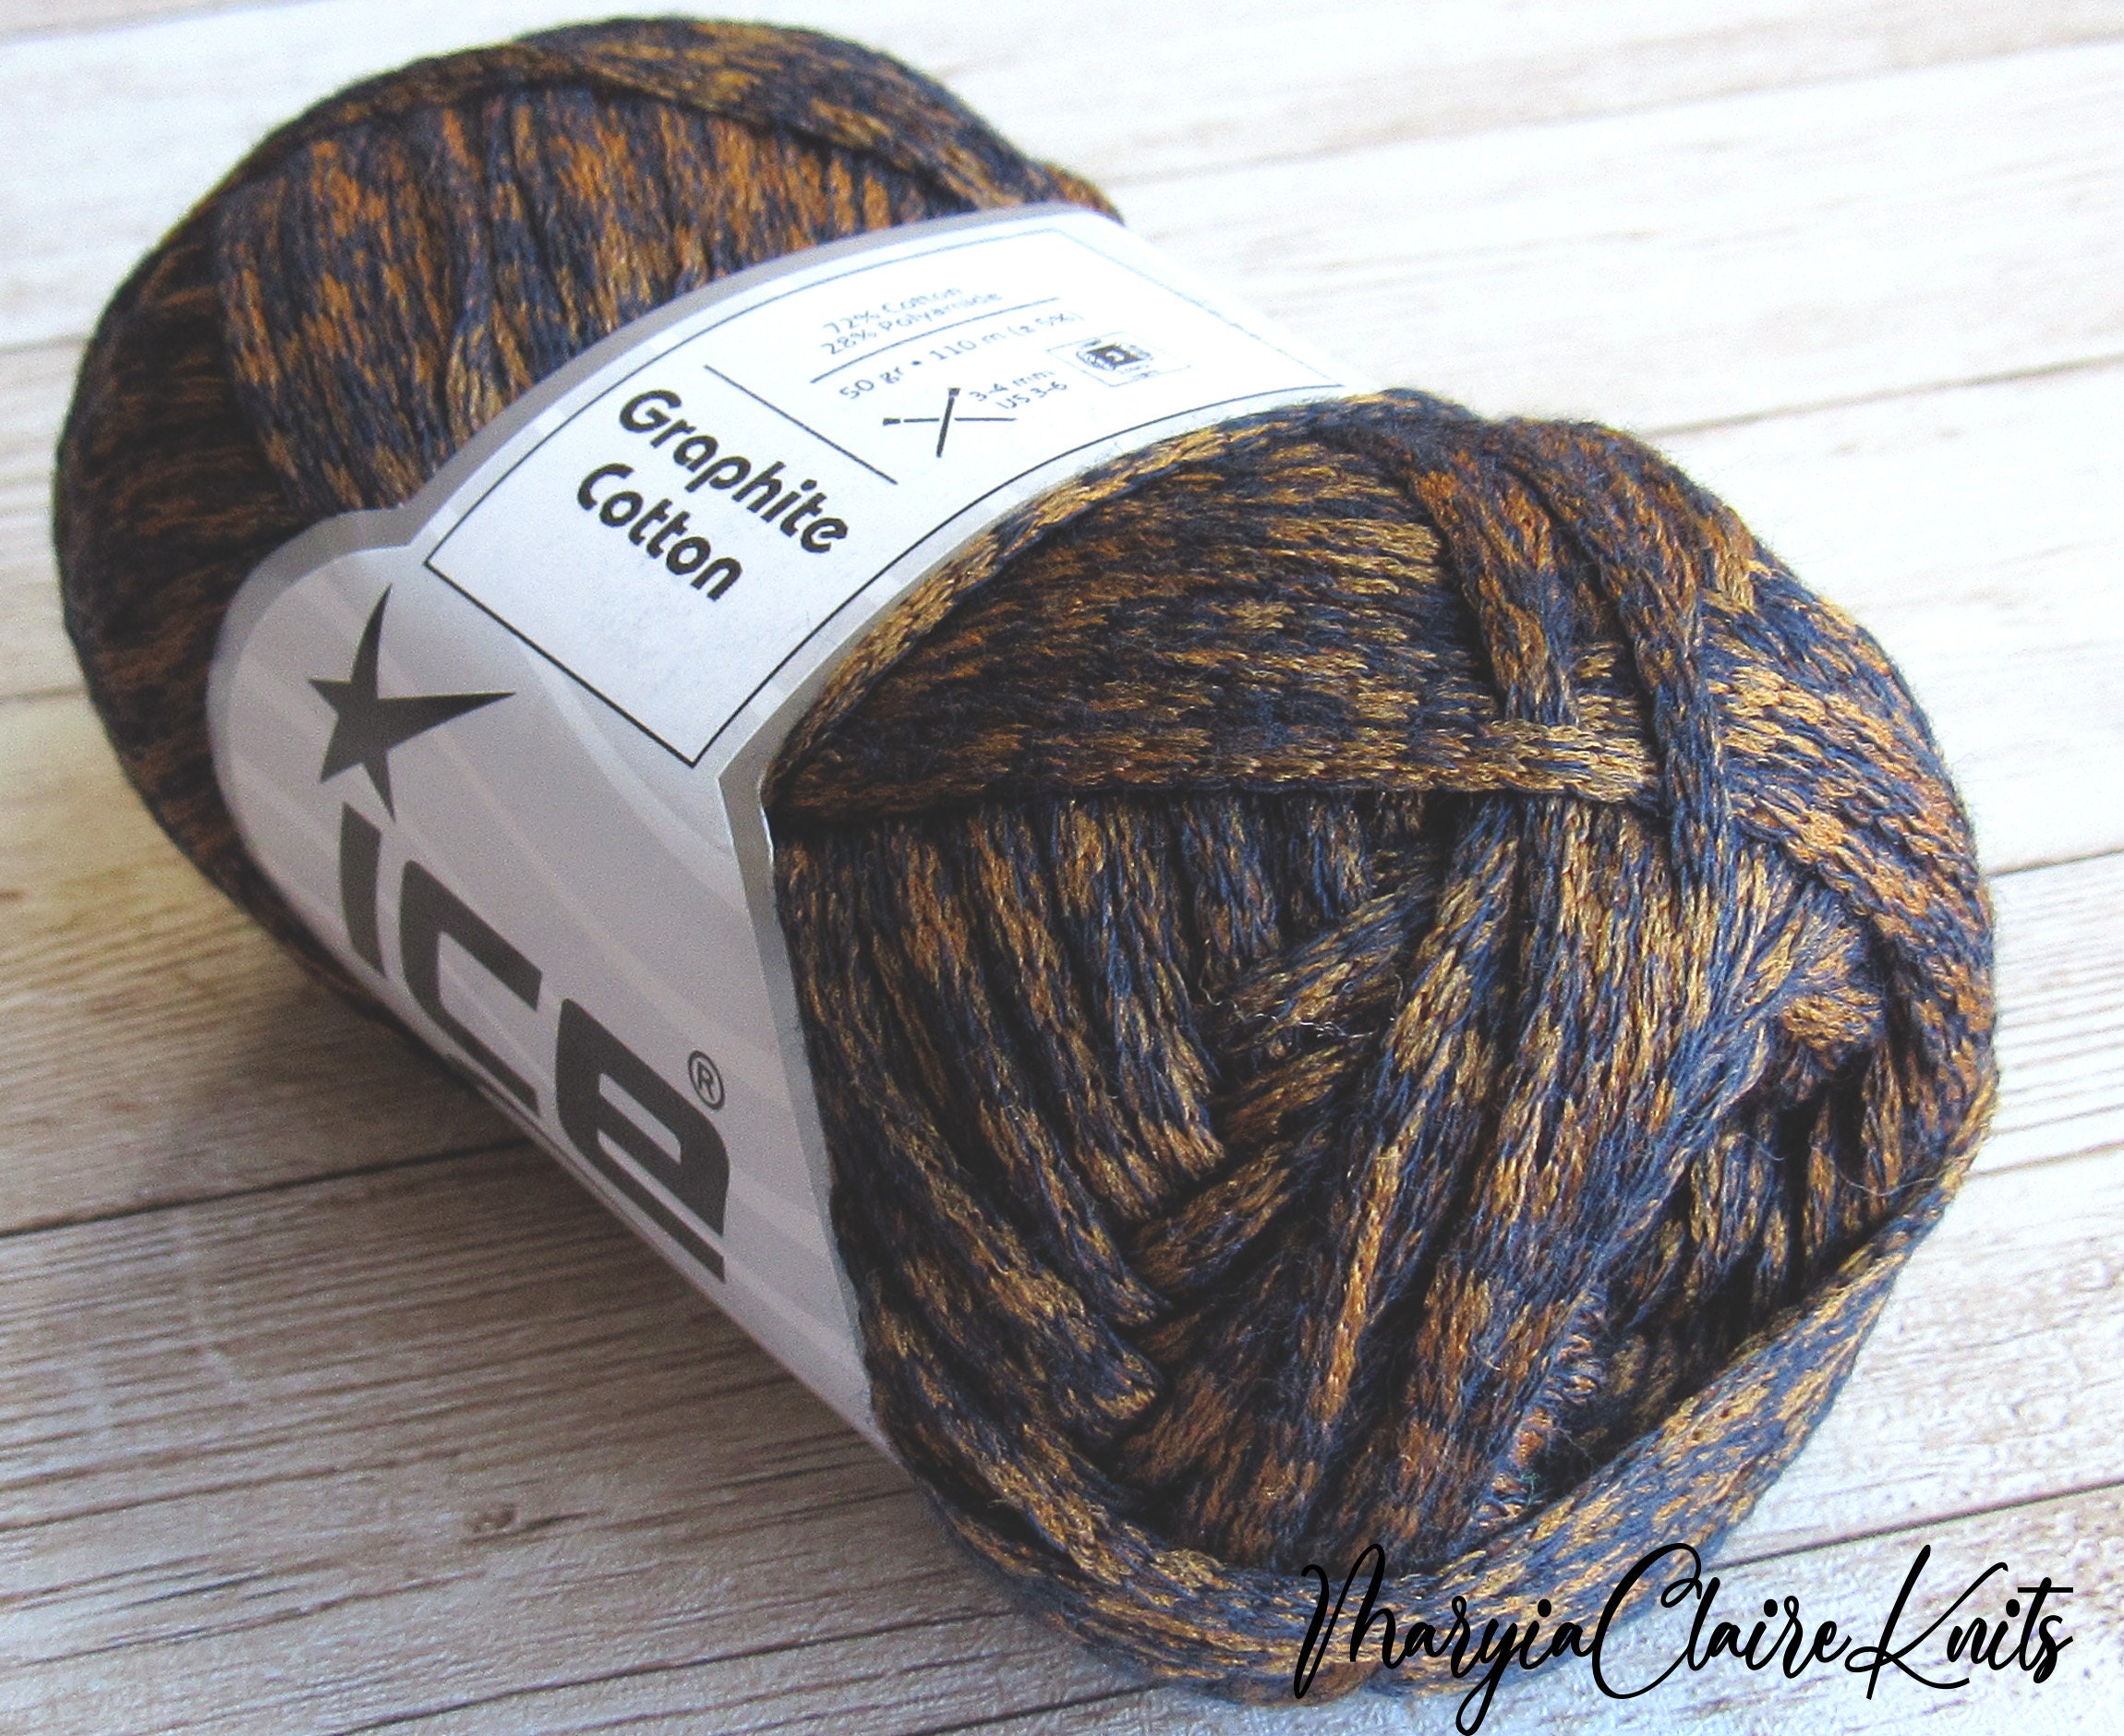 Sport weight yarn for knitting. Brown wool Sock yarn SCHOPPEL Admiral  Stärke 6 8488m Tobacco. Deep dark 6 ply worsted DK Variegated melange.